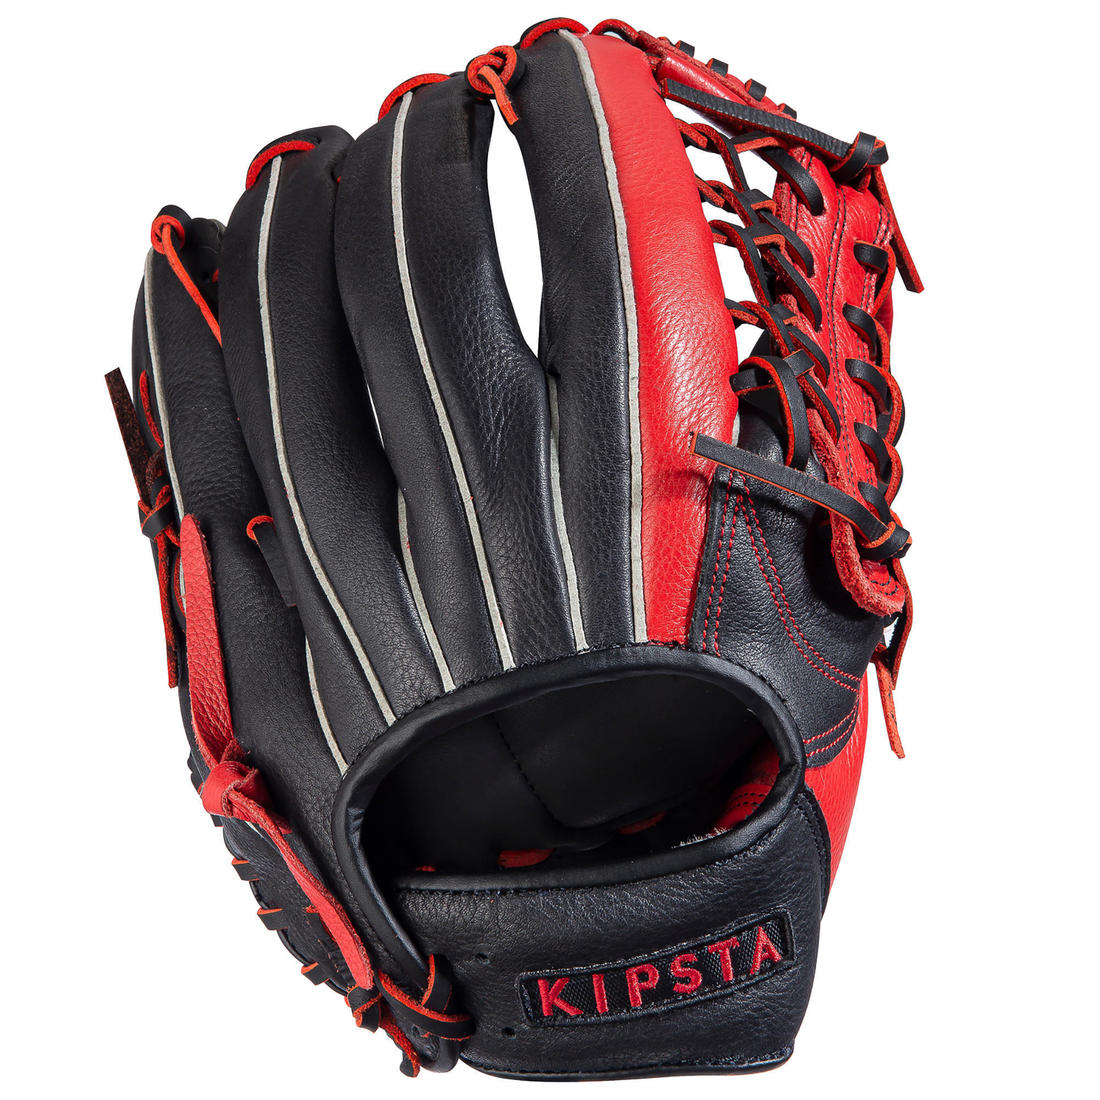 KIPSTA (キプスタ) 野球 グローブ BA550 右投げ用 外野 31.8cm／12.5インチ